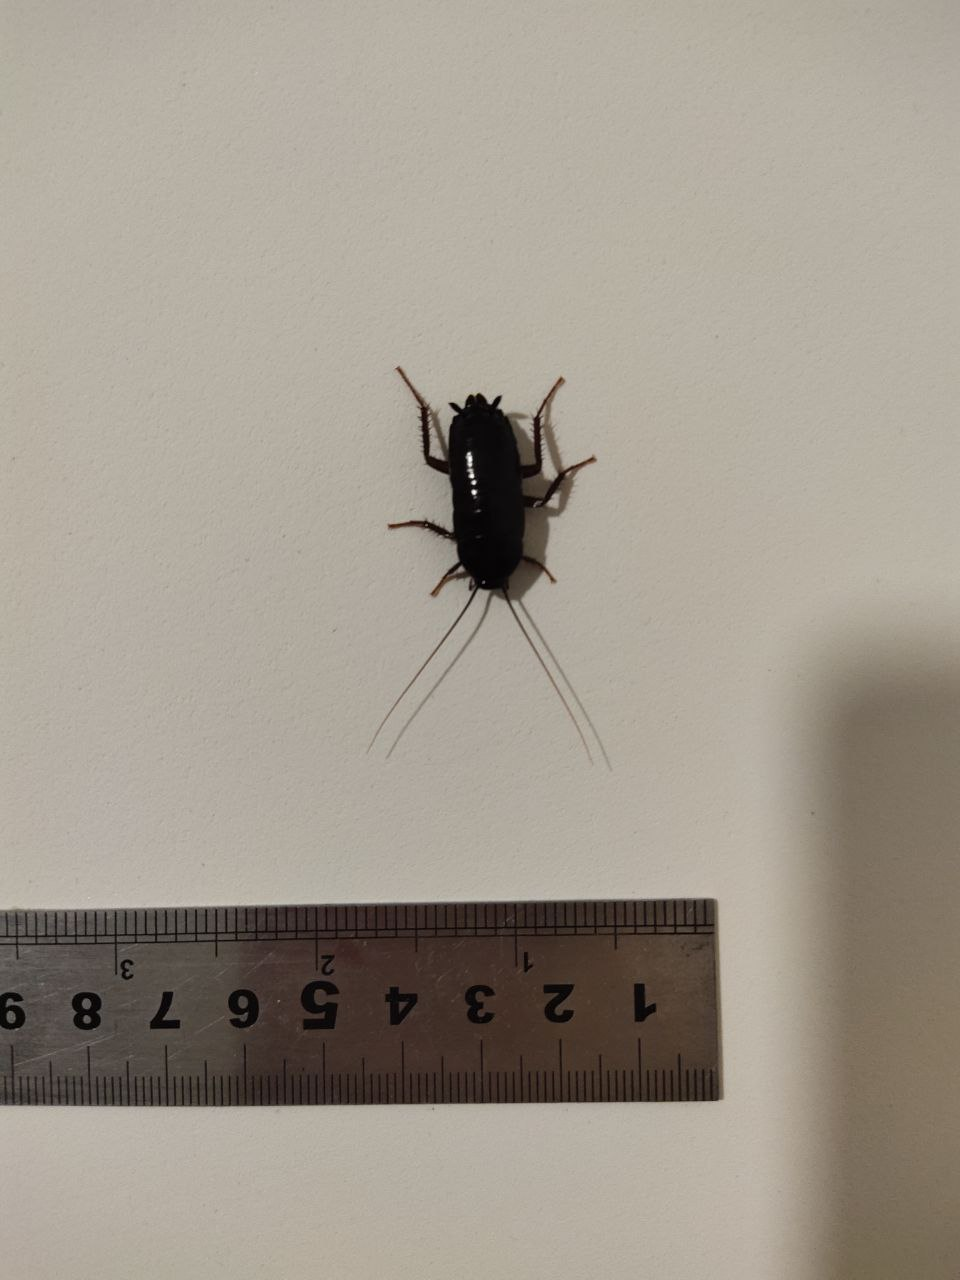 Черный похож на таракана. Чёрный Жук похожий на таракана. Жуки похожие на тараканов. Черный жучок похожий на таракана. Чёрные жуки в квартире похожие на тараканов.